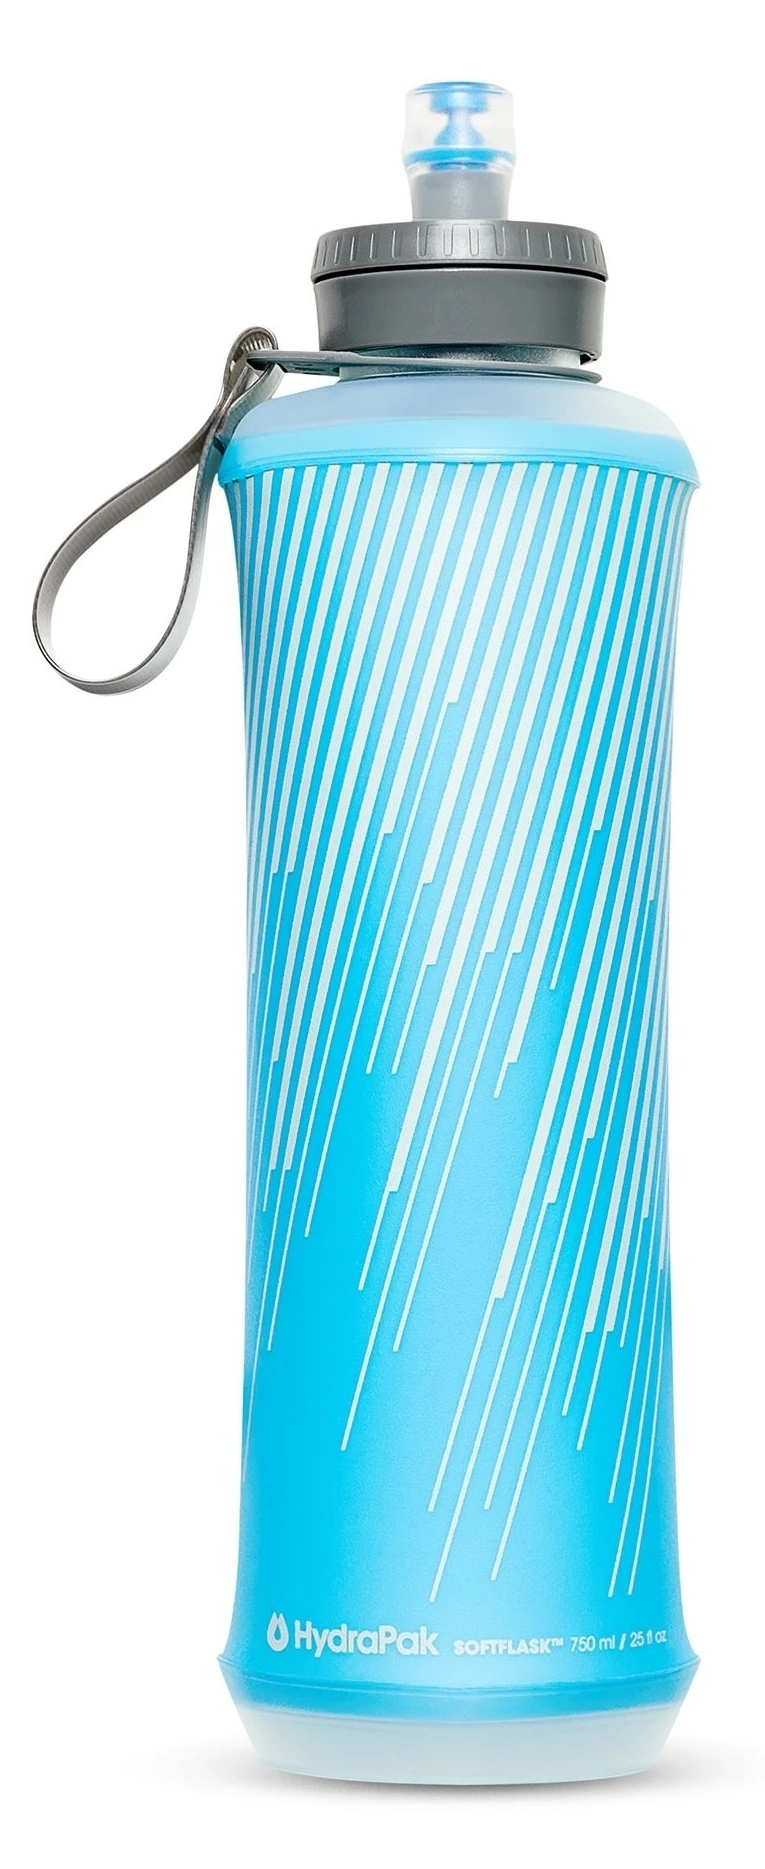 Мягкая бутылка для воды HydraPak Softflask (0,75 литра), голубая